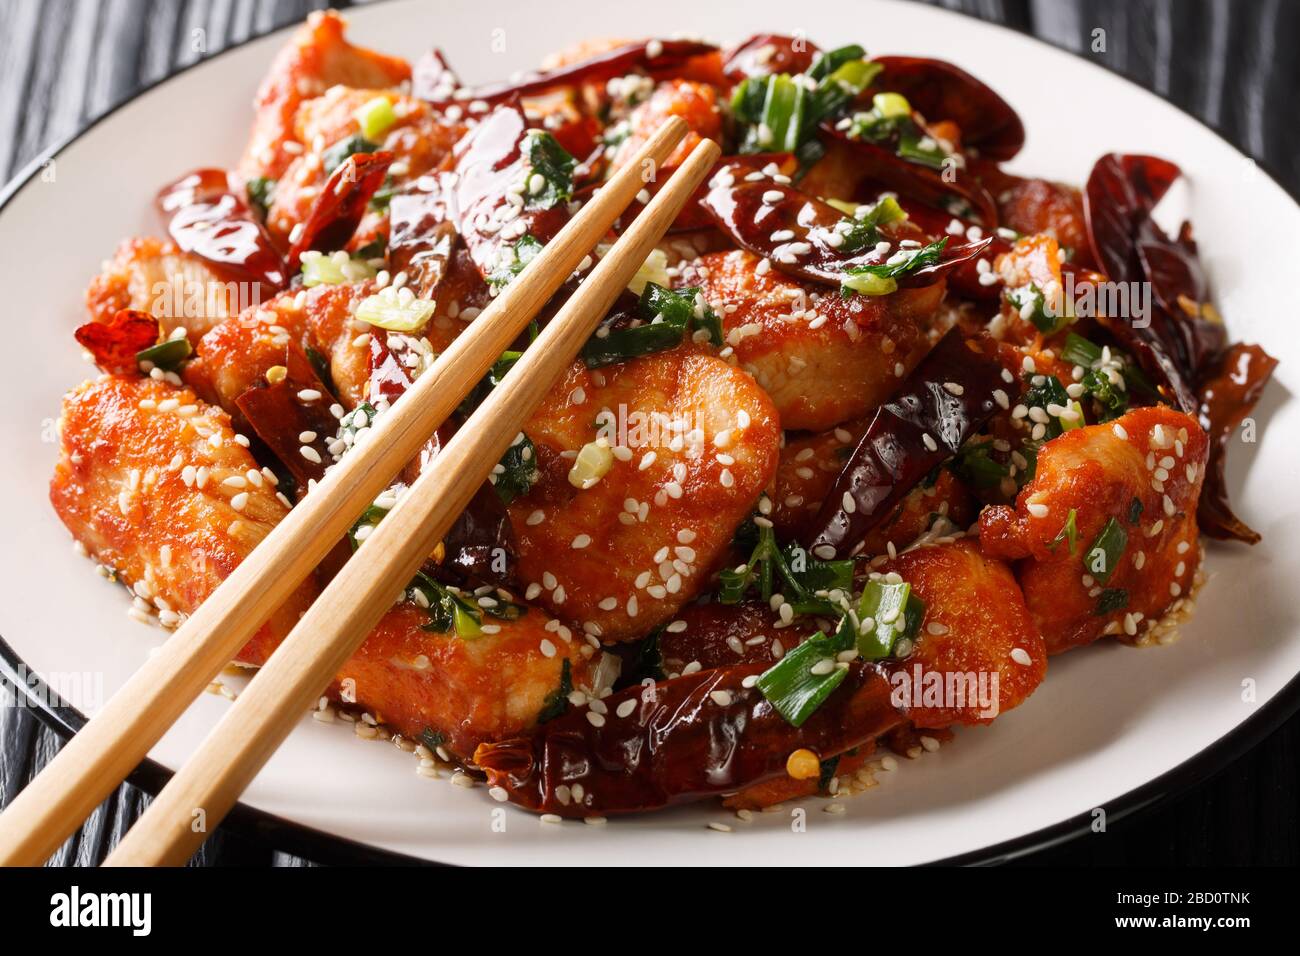 Sehr würziges Sichuan-Mala-Huhn ist ein beliebtes Gericht in China in der Nähe eines Tellers auf dem Tisch. Horizontal Stockfoto